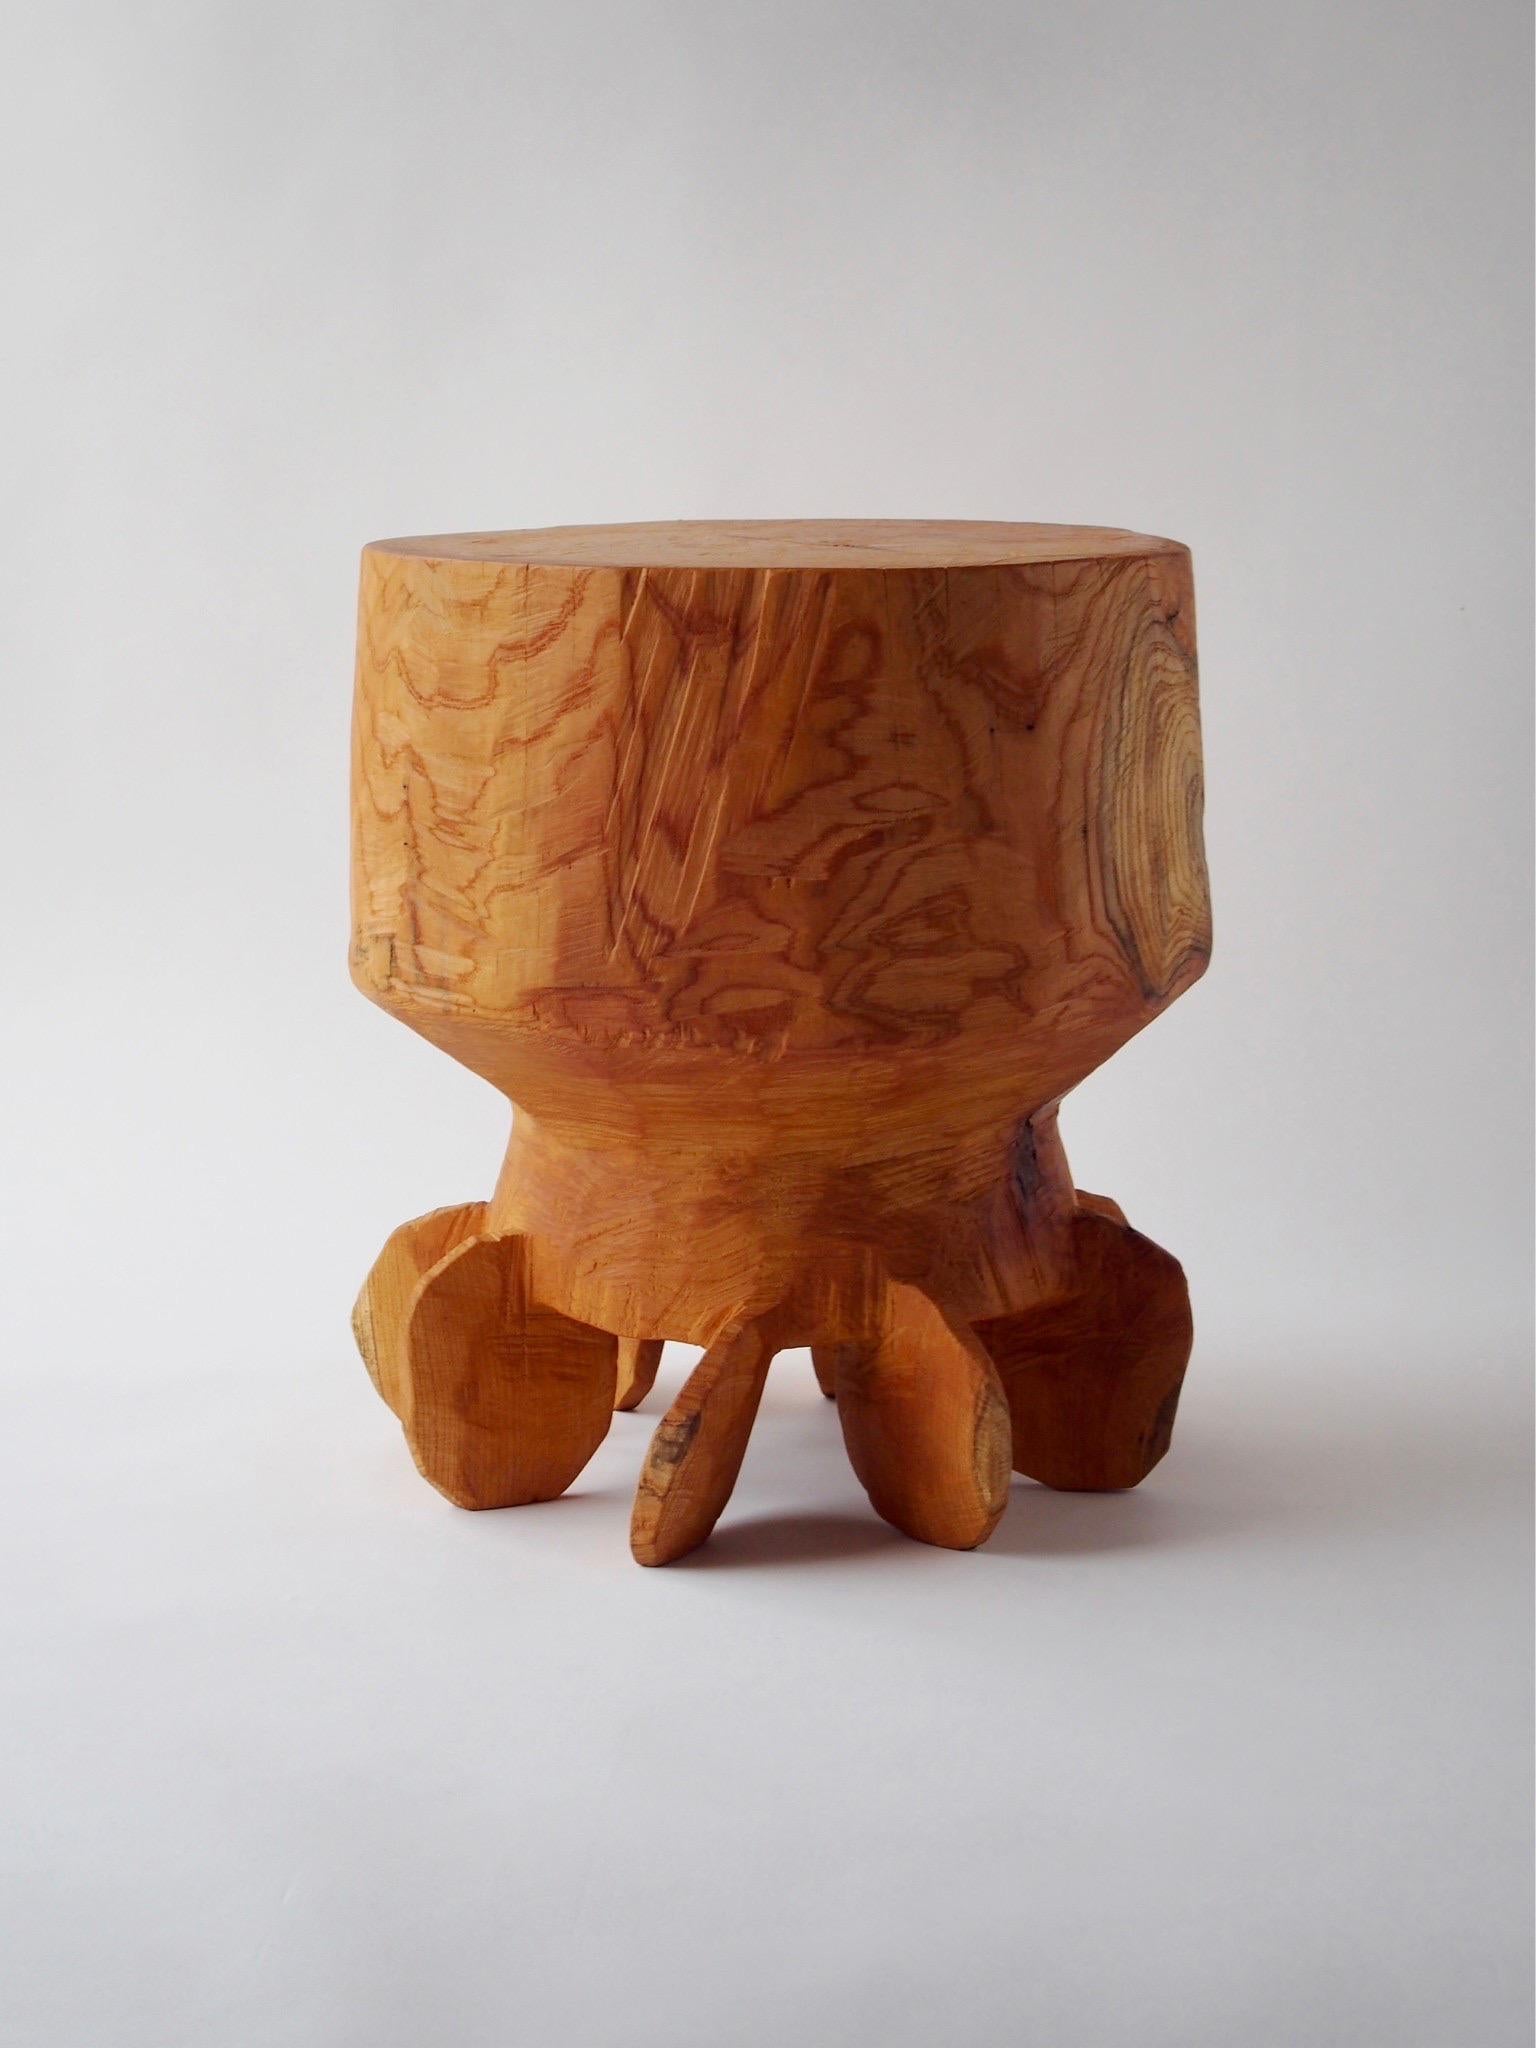 Nom : 8x8
Table sculpturale de Zougei, meubles sculptés
MATERIAL : Zelkova
Cette œuvre est sculptée dans du bois à l'aide de plusieurs types de tronçonneuses.
La plupart des bois utilisés pour les œuvres de Nishimura ne peuvent servir à rien, ce